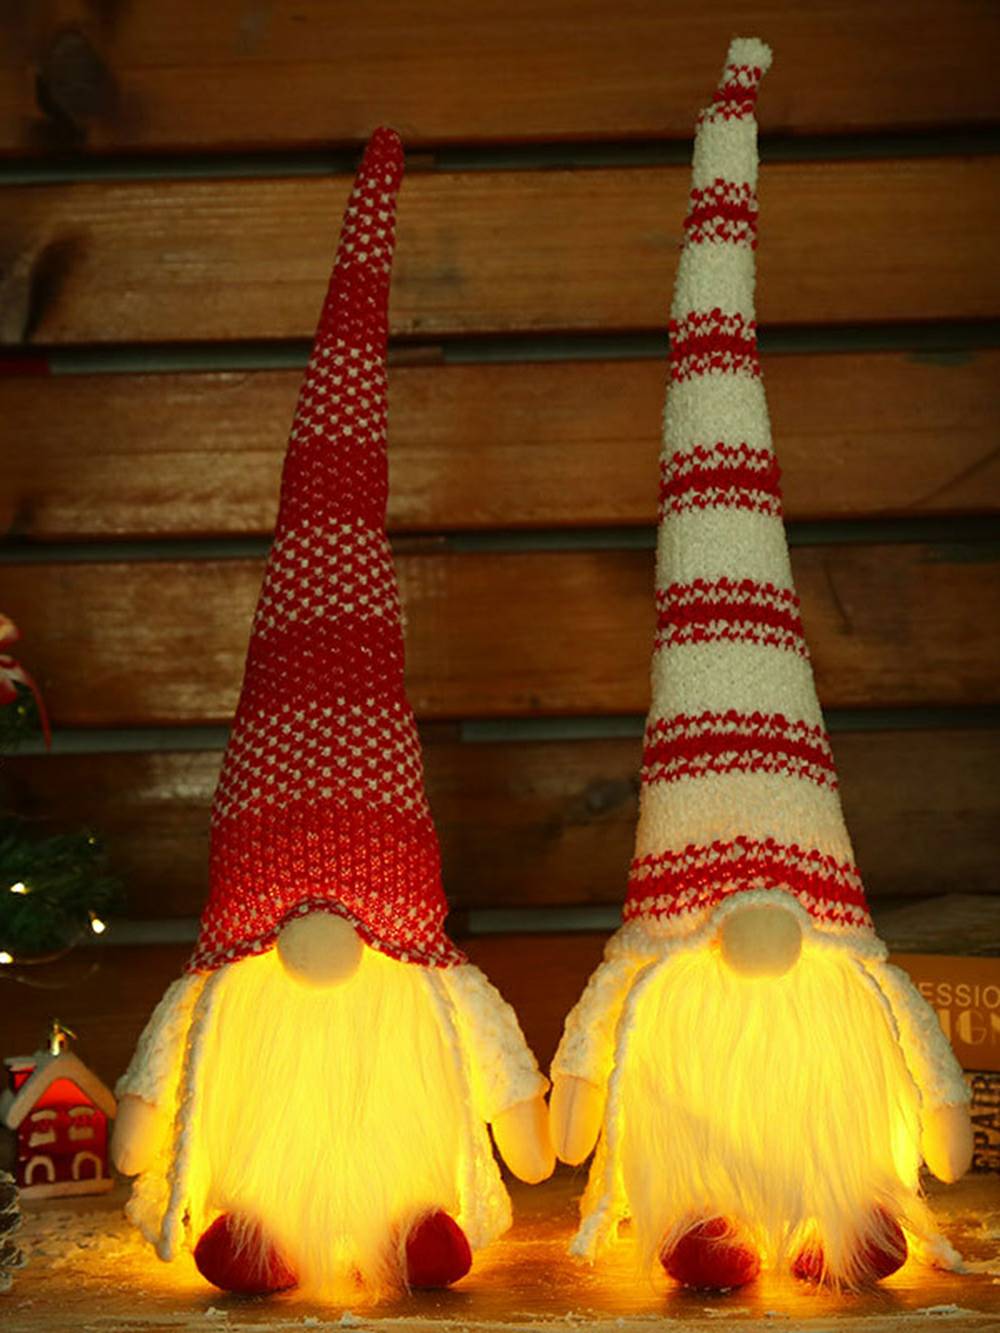 Weihnachtsplüsch-Rudolph-Puppe mit rot-weiß gestreiftem langem Hut